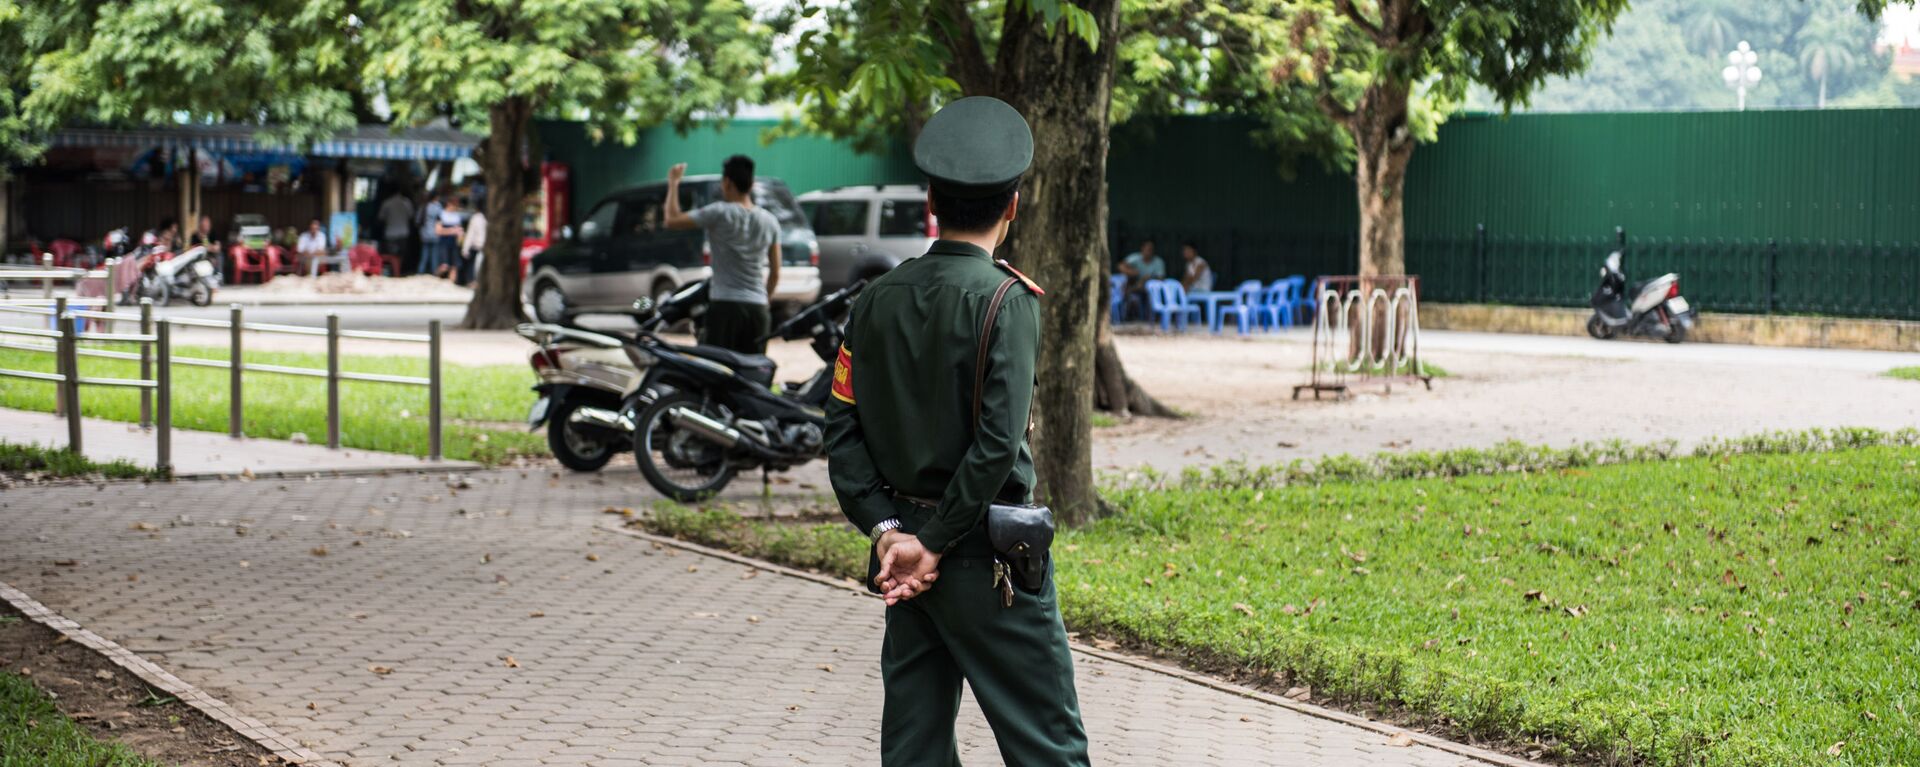 Nhân viên cảnh sát trên đường phố Hà Nội. - Sputnik Việt Nam, 1920, 29.03.2021